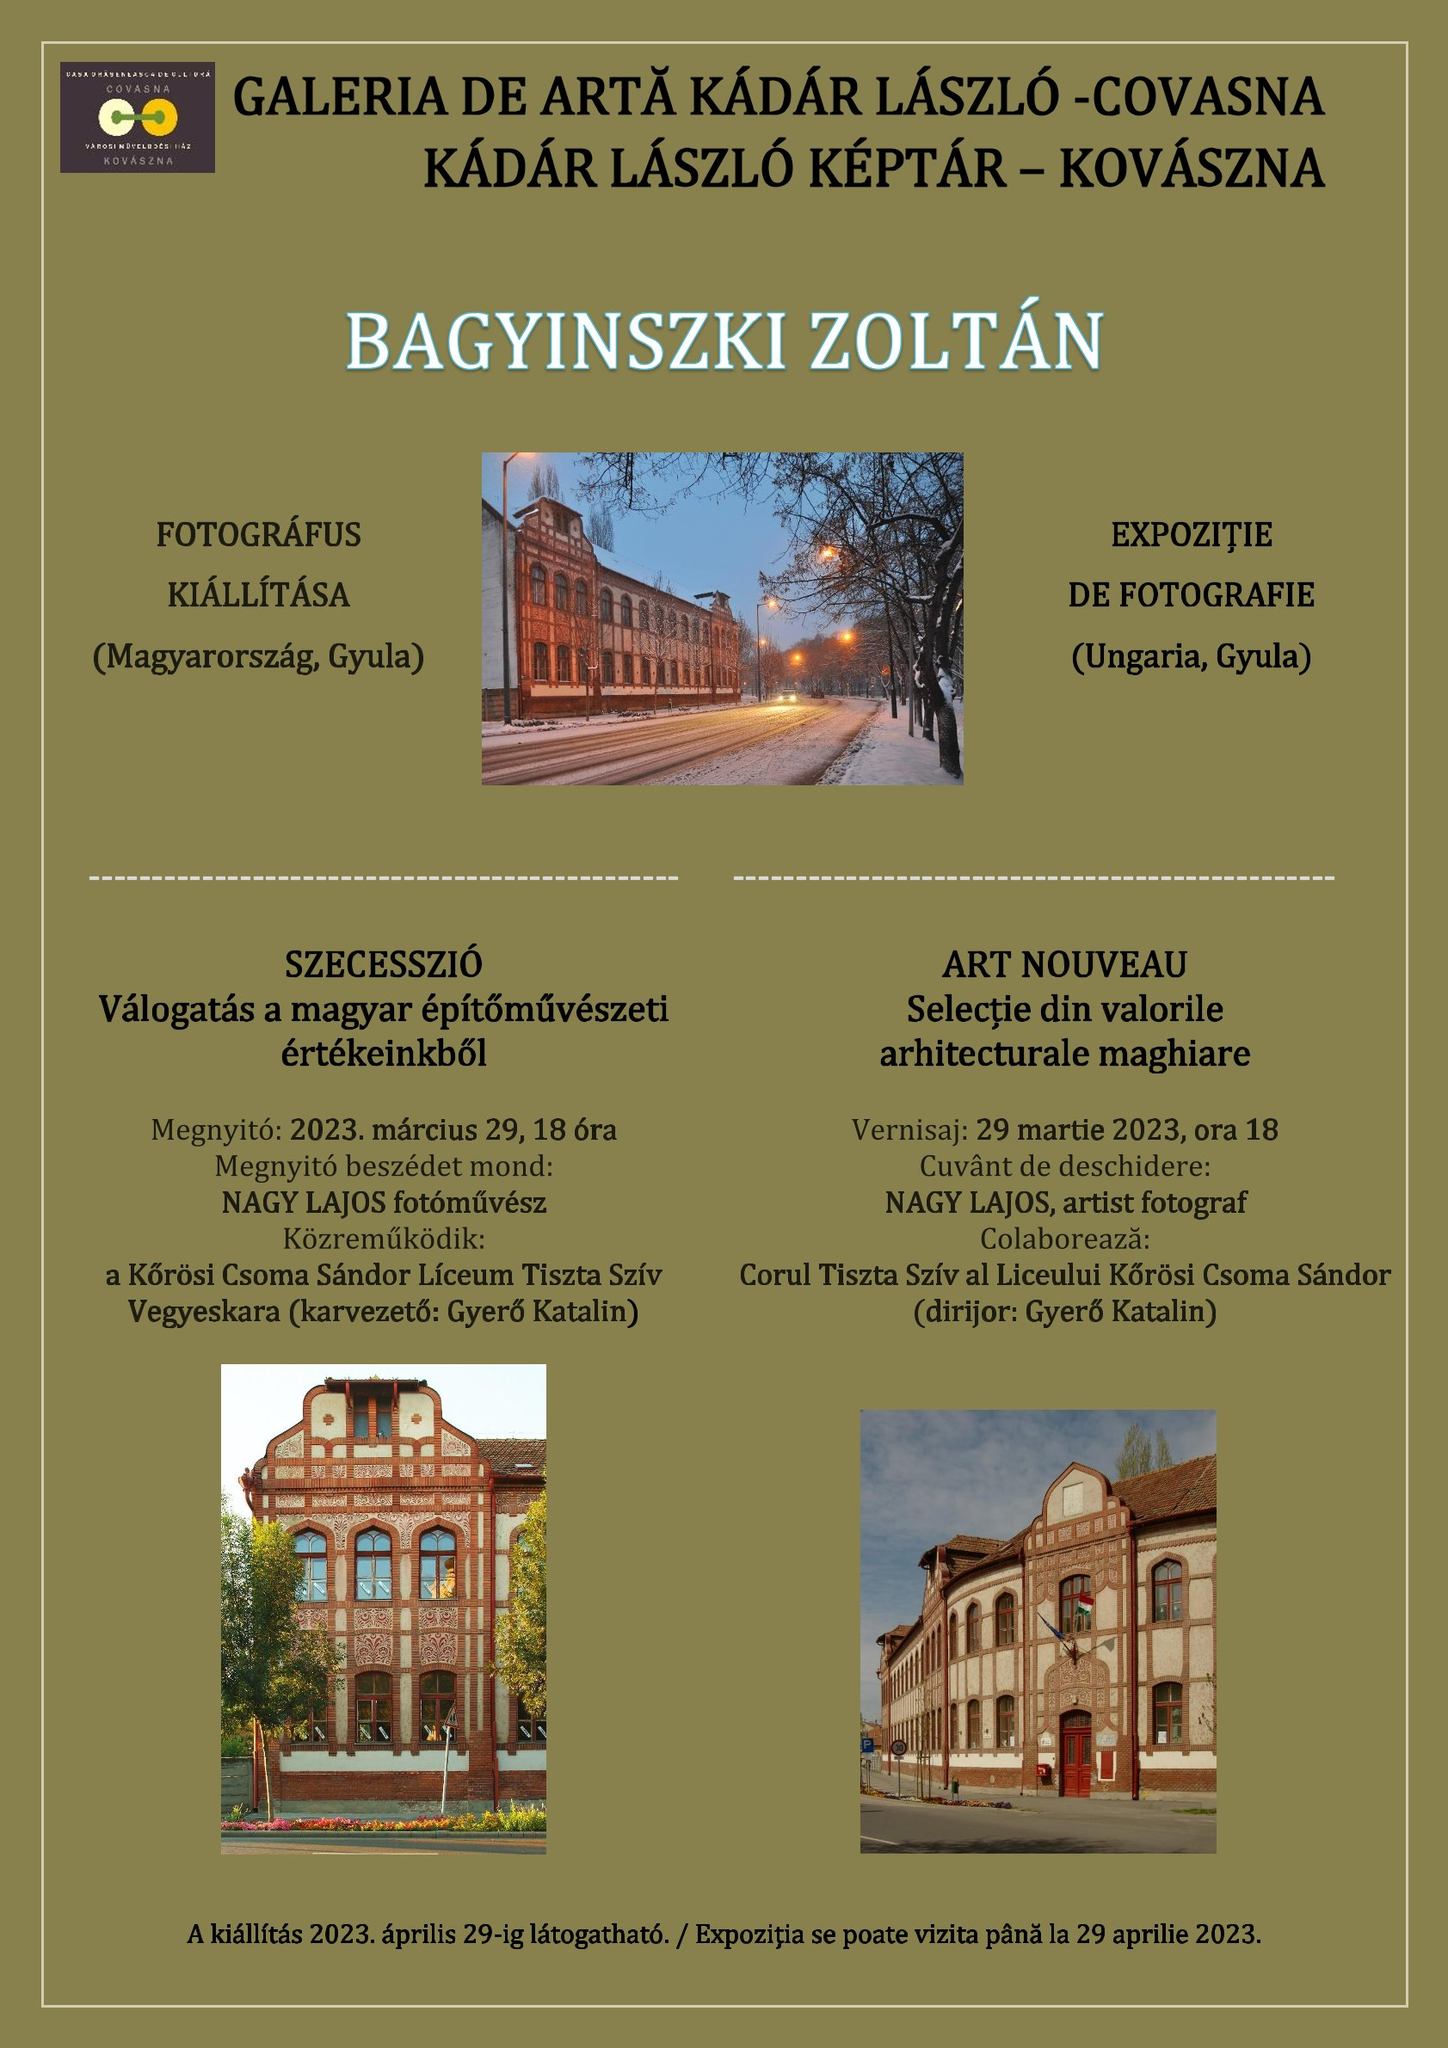 SZECESSZIÓ - Válogatás a magyar építőművészeti értékeinkből